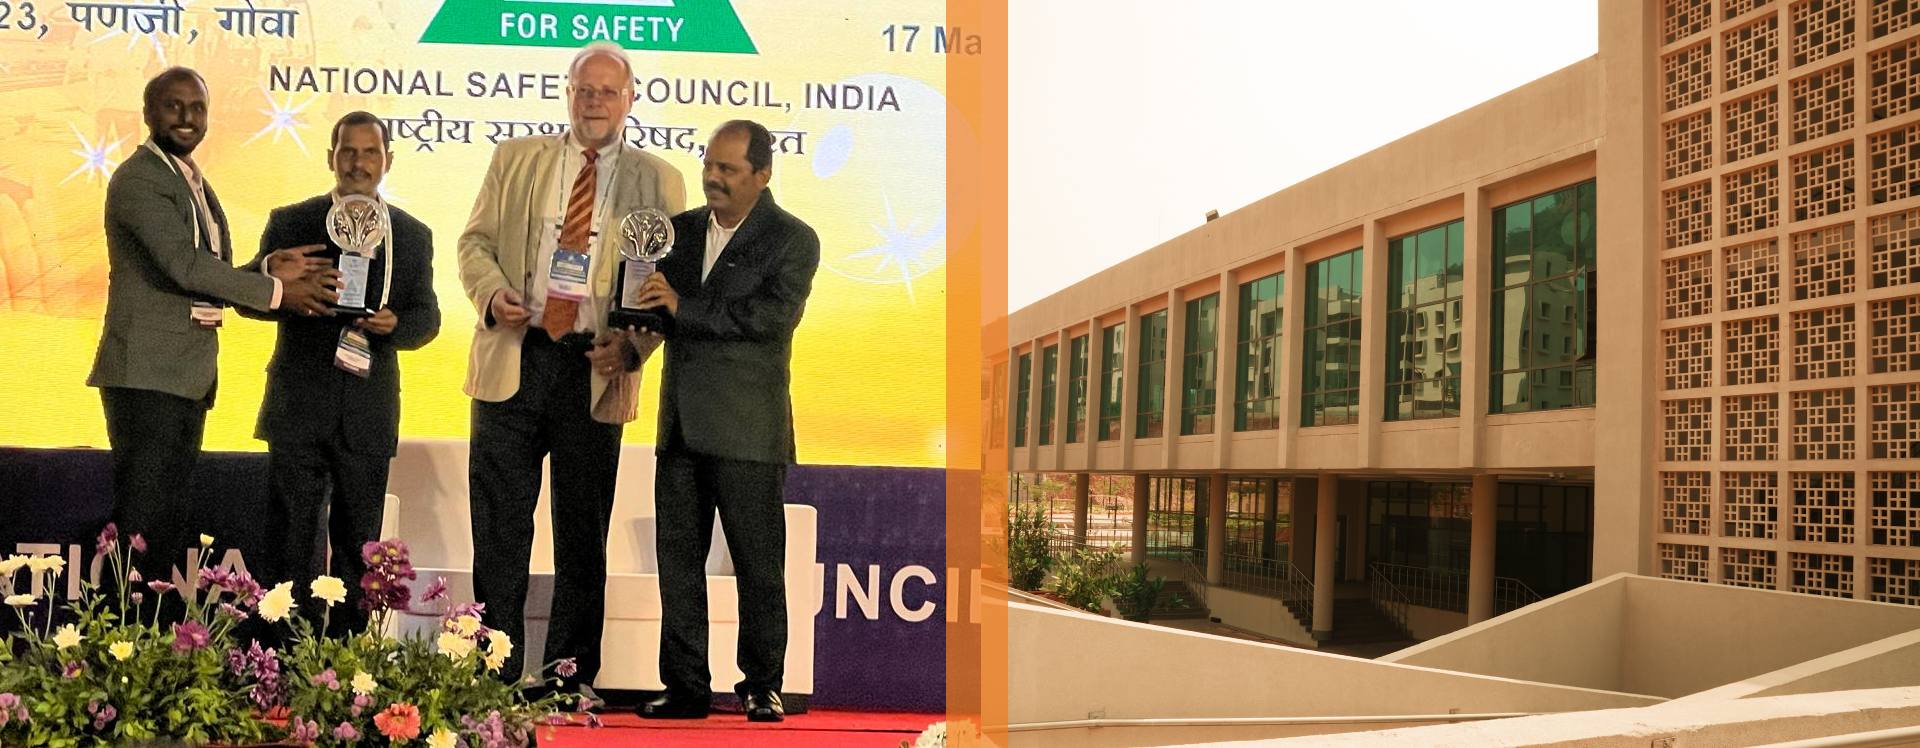 IIM Visakhapatnam Project has won the prestigious NSCI Safety Award Shreshtha Suraksha Puraskar 